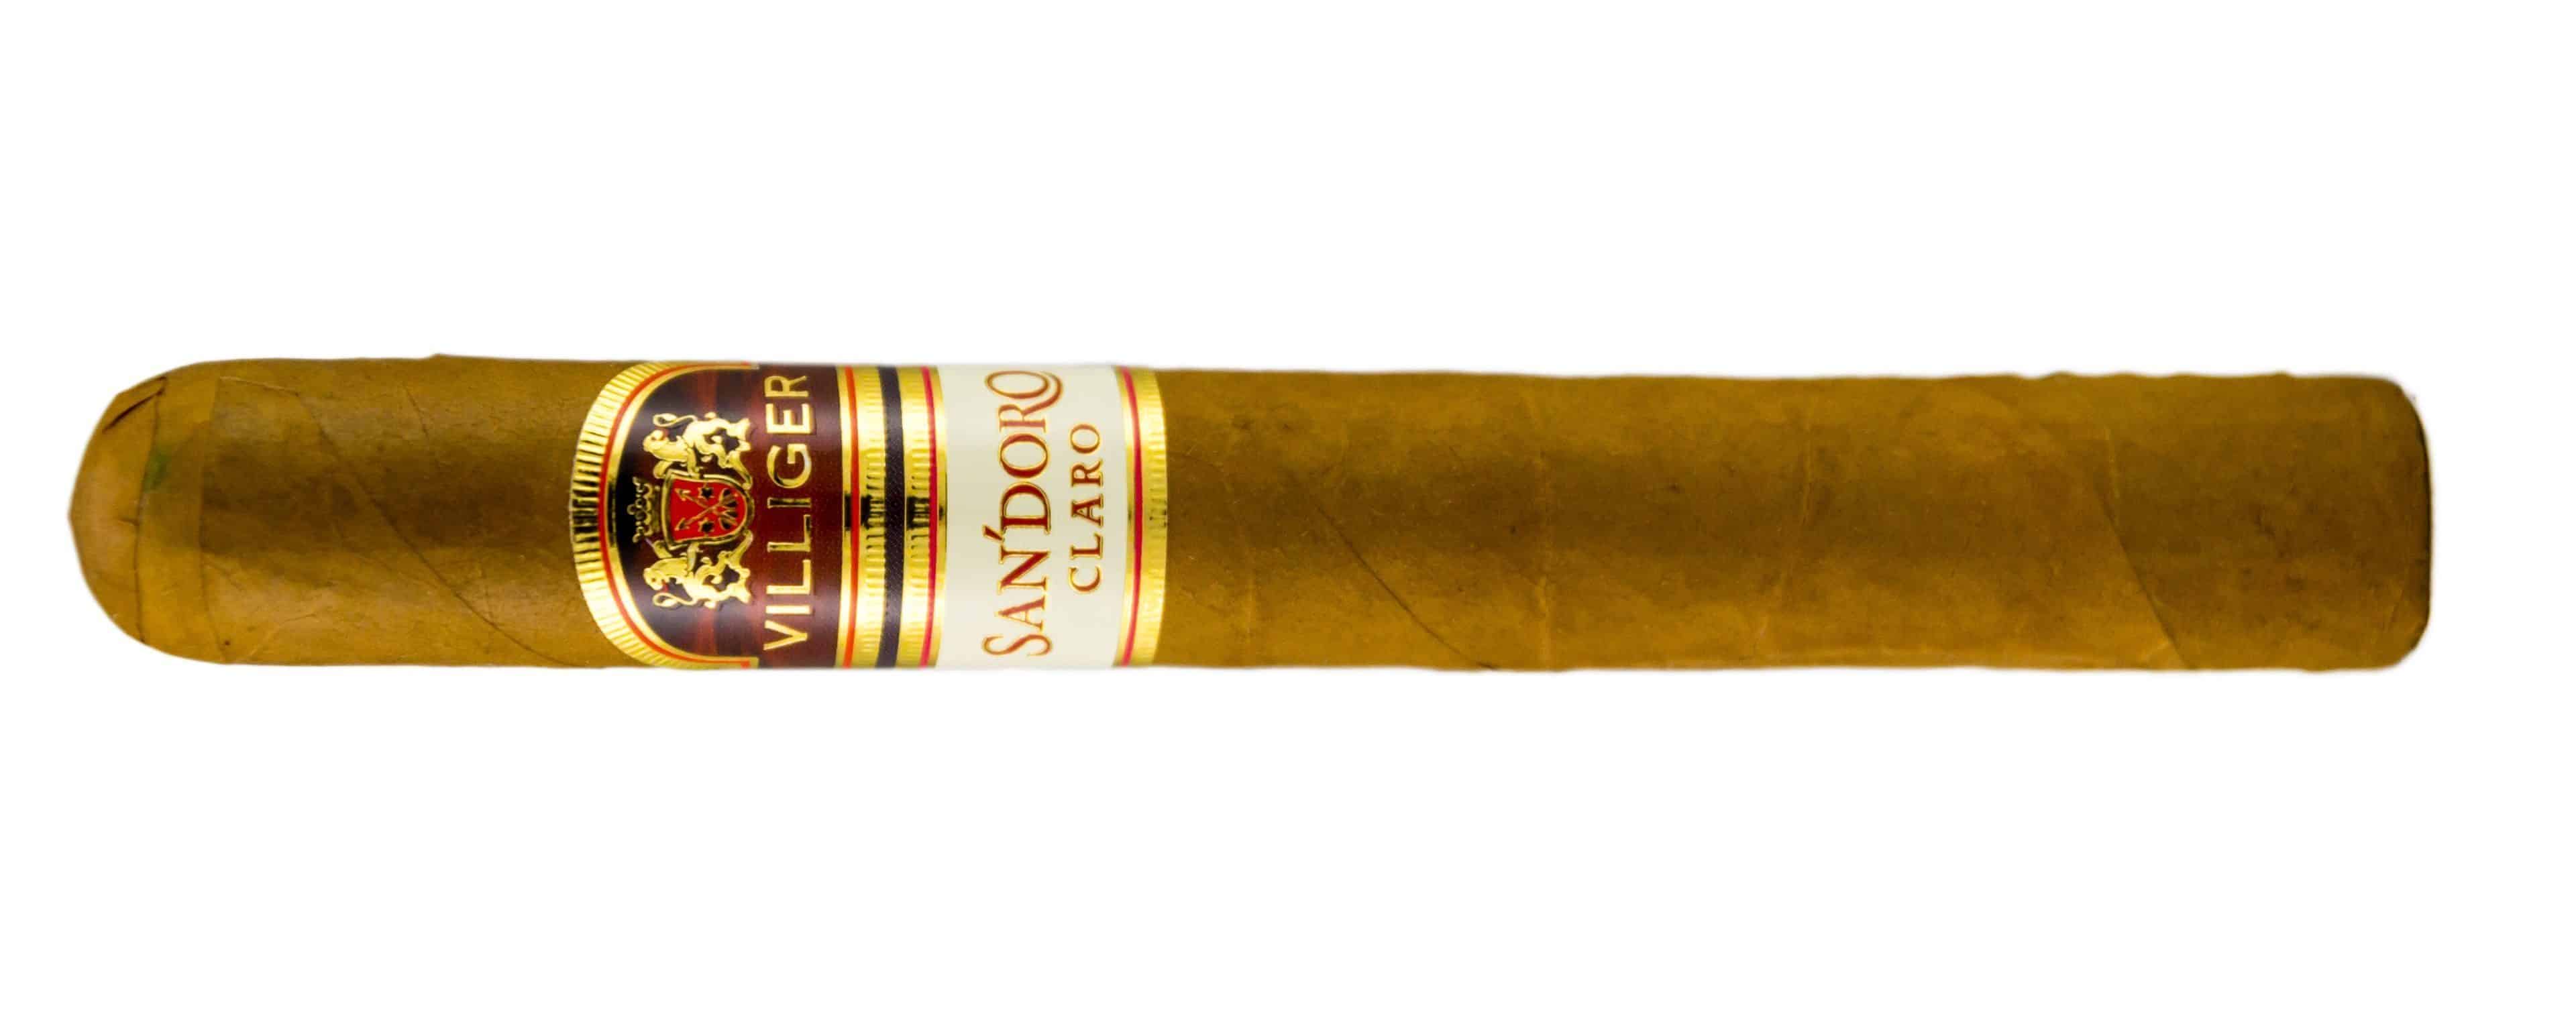 Blind Cigar Review: Villiger | San'Doro Claro Toro